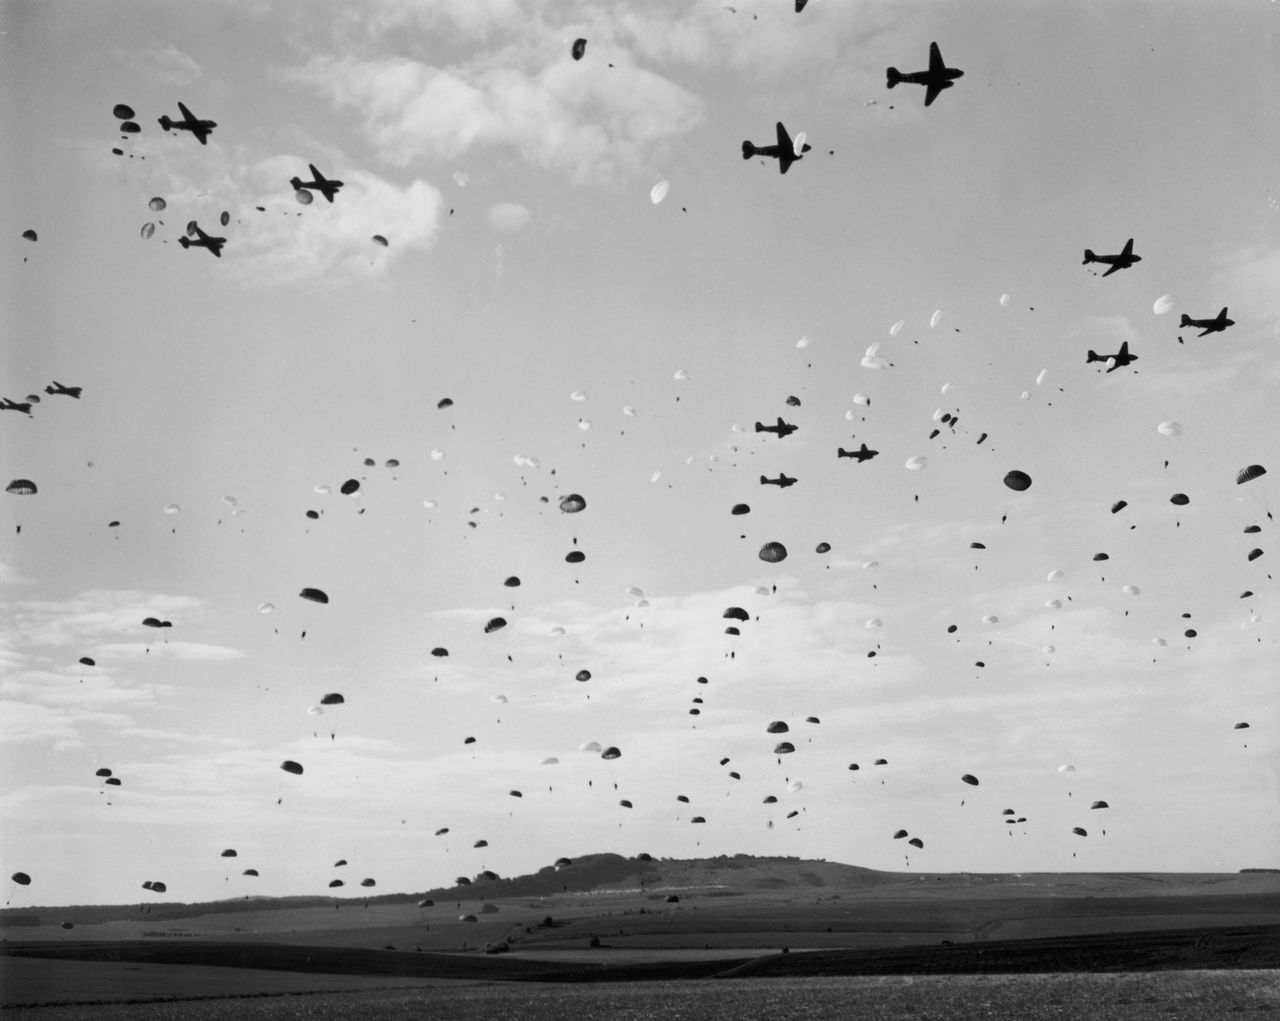 Amerykanie zrzucali bobry na spadochronach - zdjęcie ilustracyjne